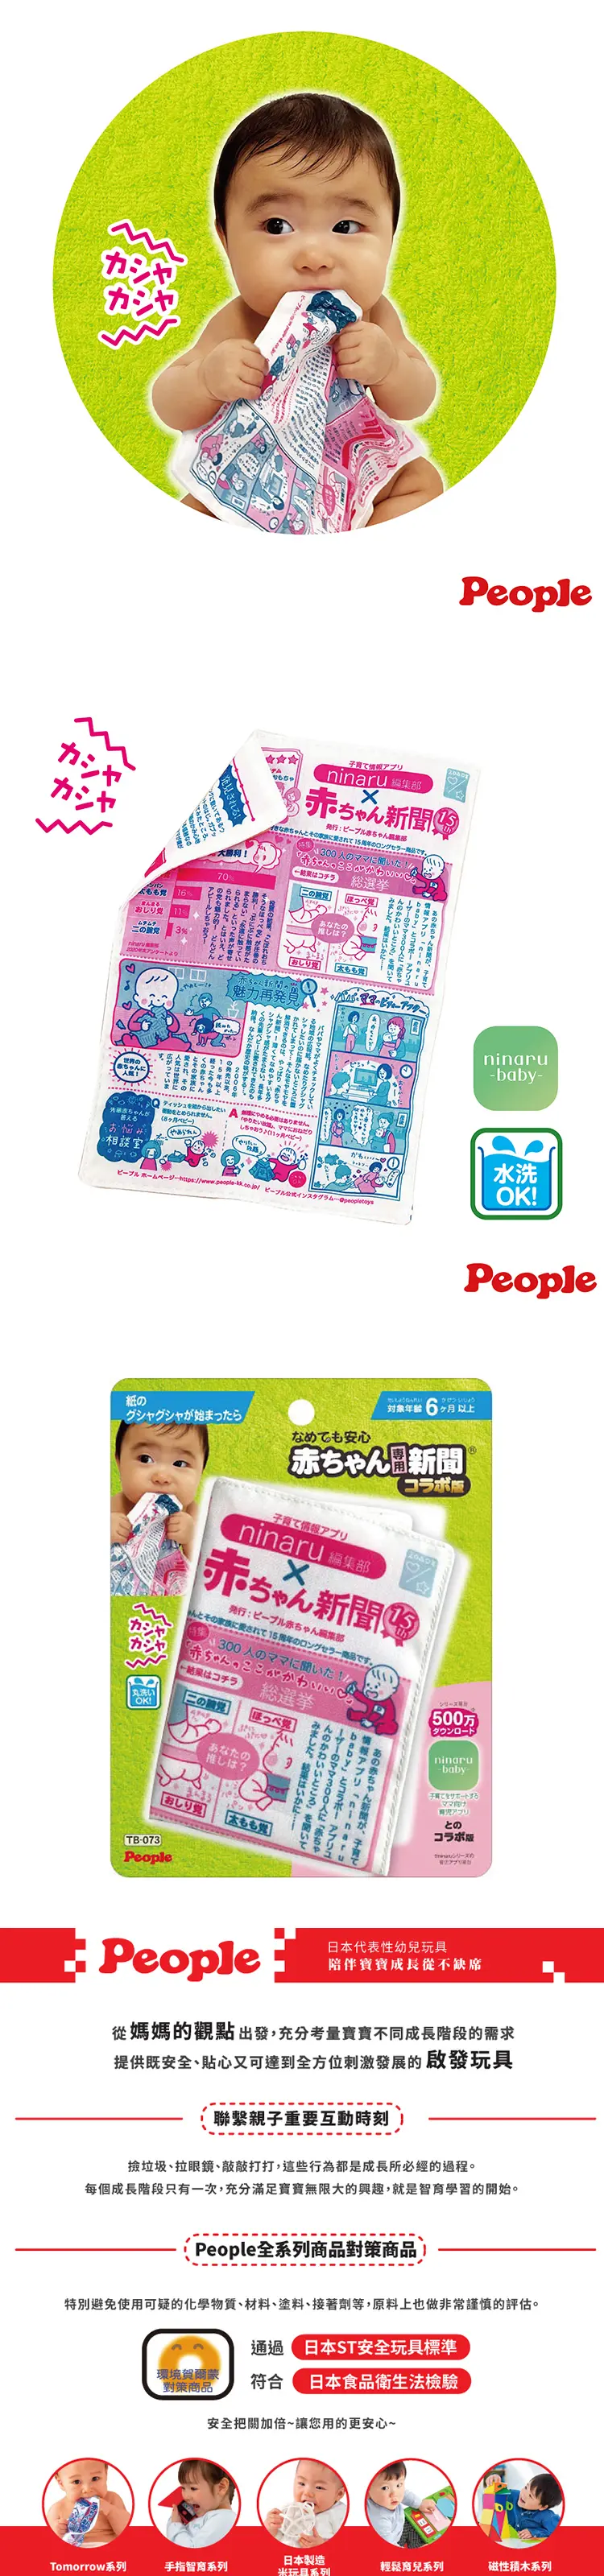 People 婴儿专用报纸玩具